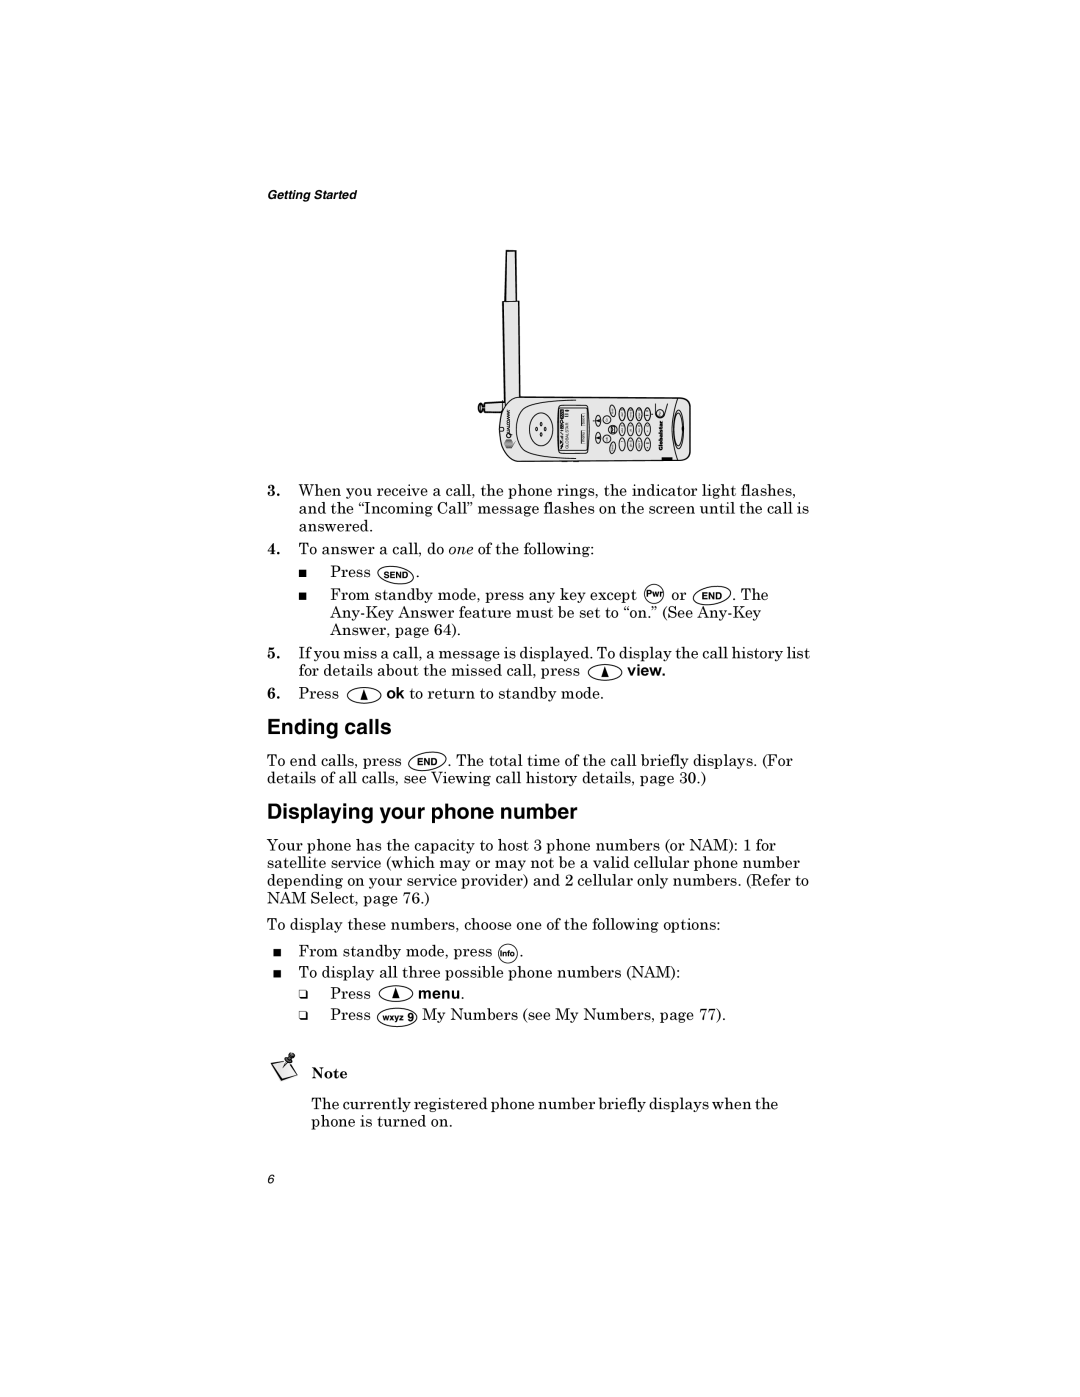 Qualcomm GSP-1600 manual Ending calls, Displaying your phone number, DQVZHUHG 7RDQVZHUDFDOOGRRQHRIWKHIROORZLQJ 3UHVV 